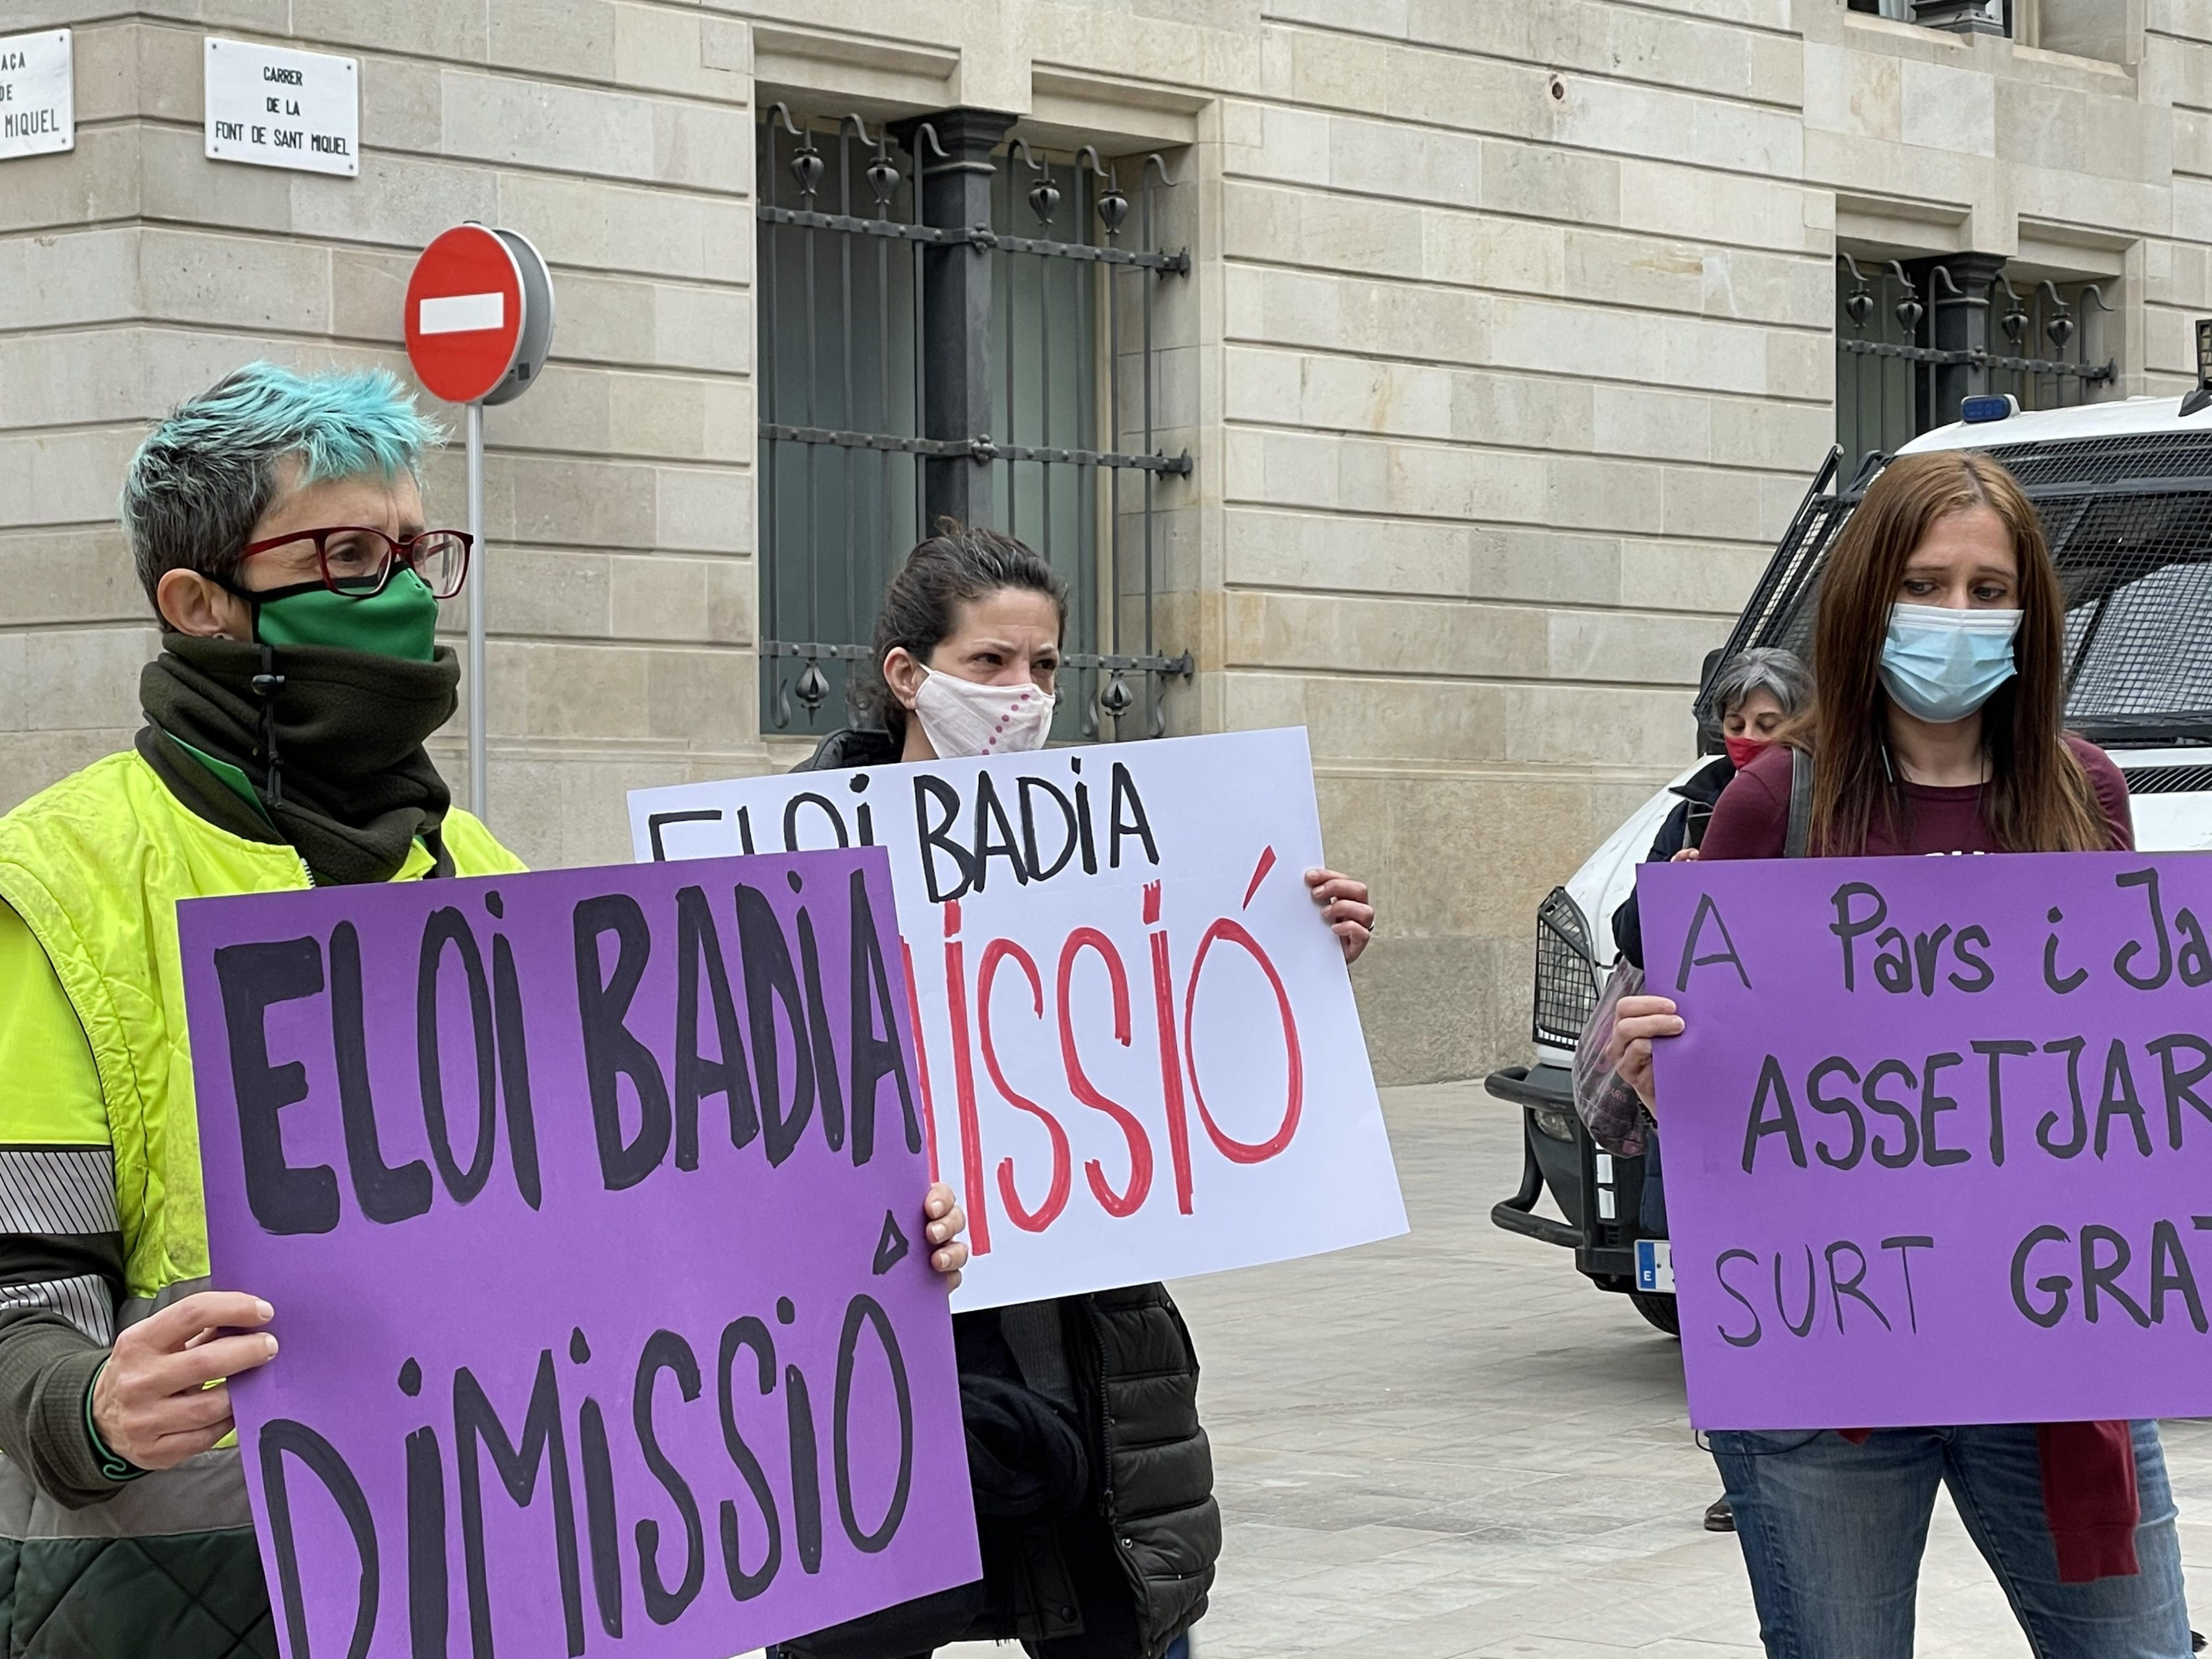 Protesta en el Ayuntamiento contra Eloi Badia por los acosos en Parcs i Jardins / DAVID GORMAN